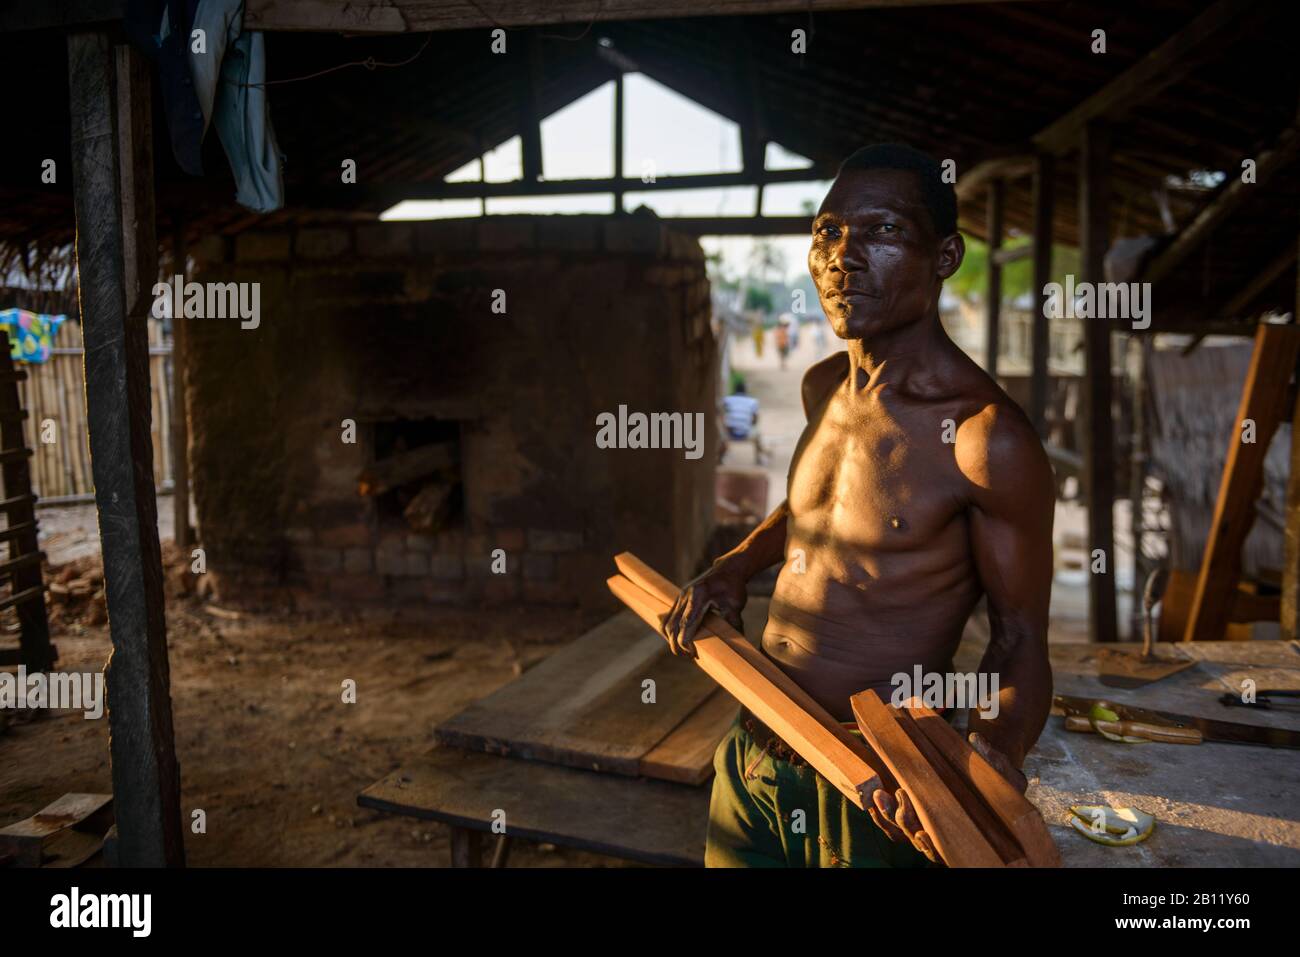 Bantu carpenter in Bayanga, Central African Republic, Africa Stock Photo